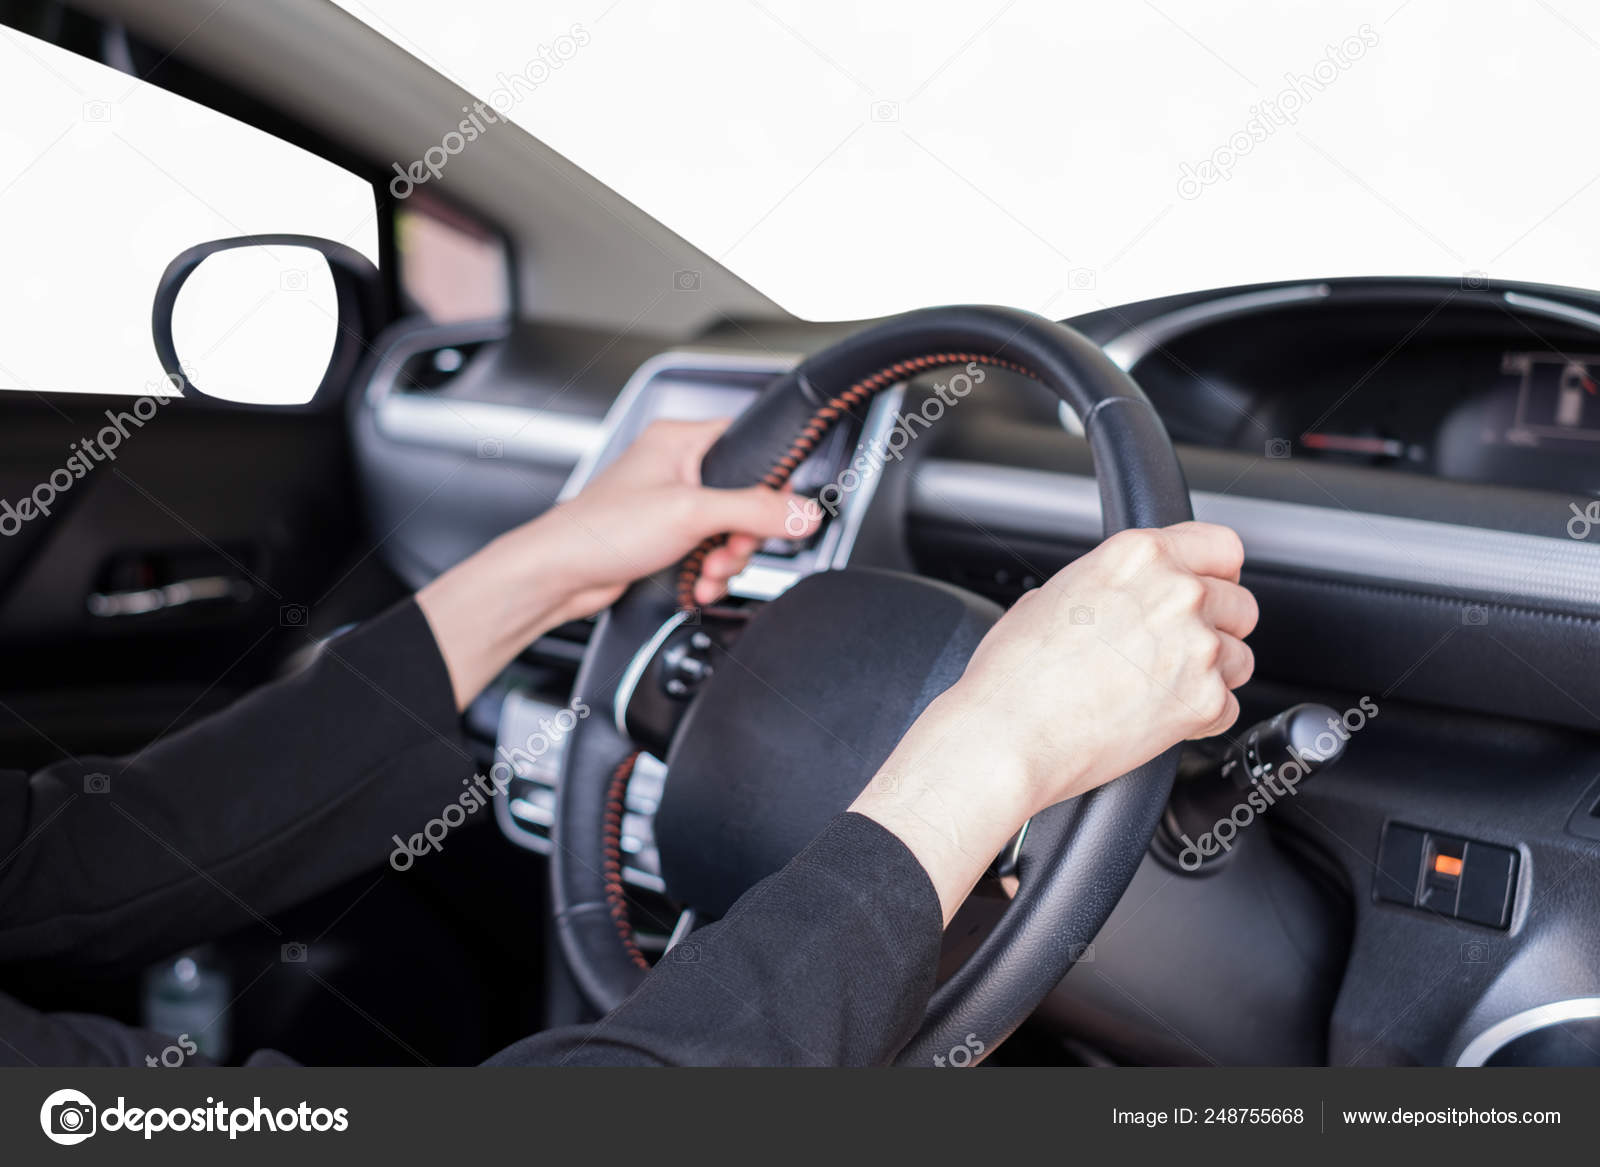 Работа рулем на автомобиле. Руль держит. Хват руля. Правильное положение рук на руле. Правильный хват рулевого колеса.